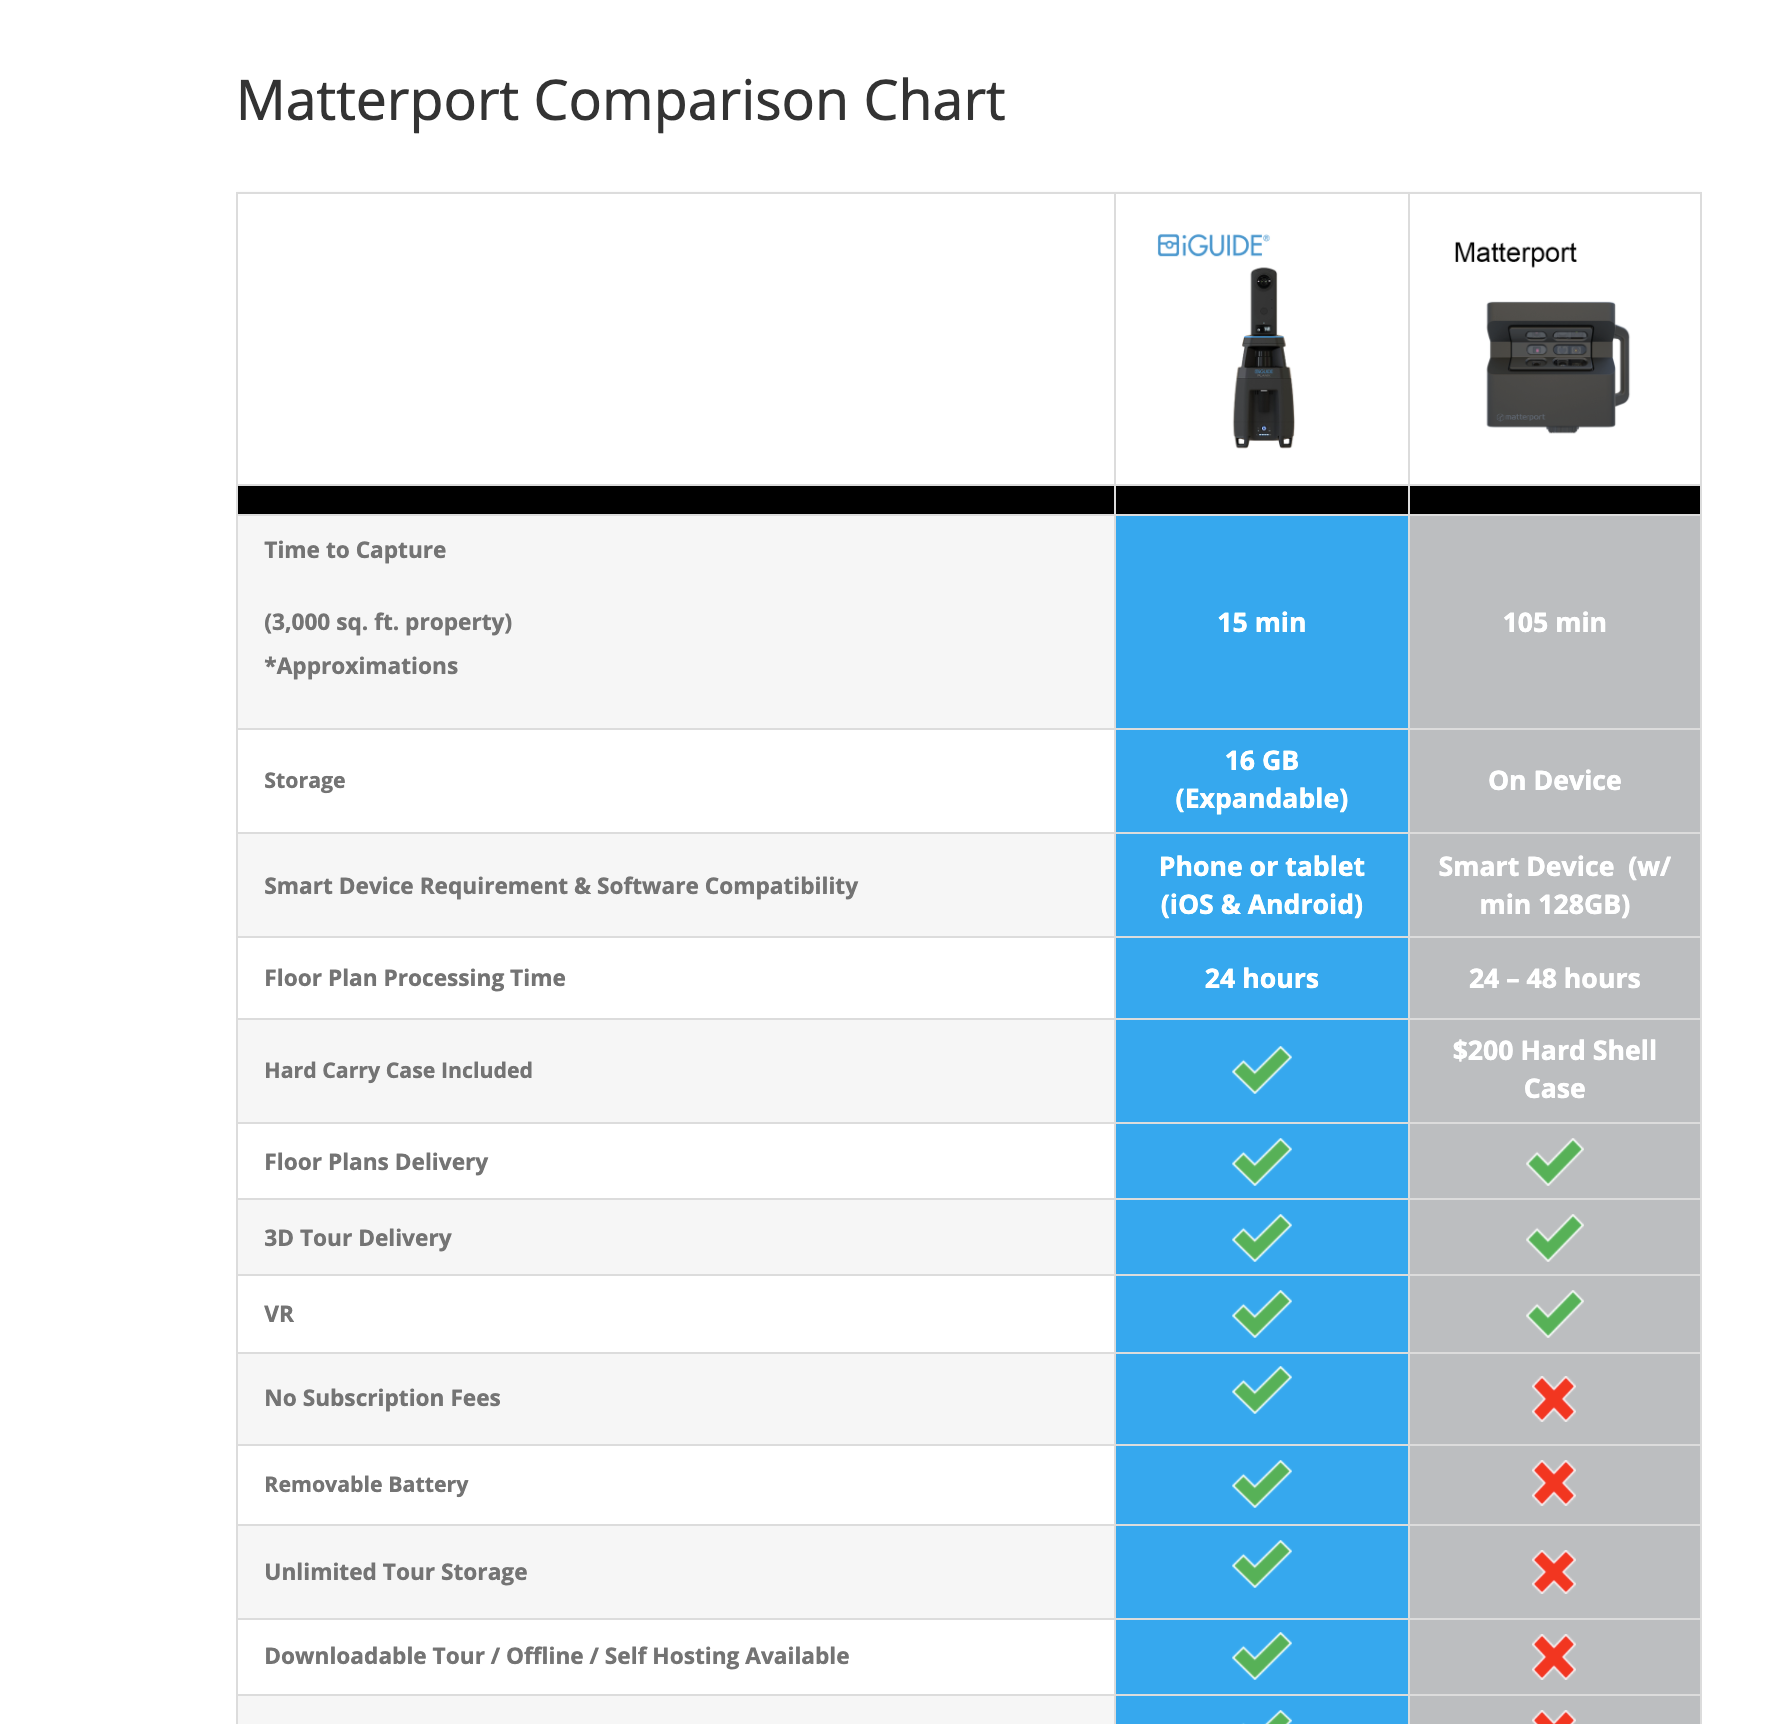 iGuide x Matterport comparison chart